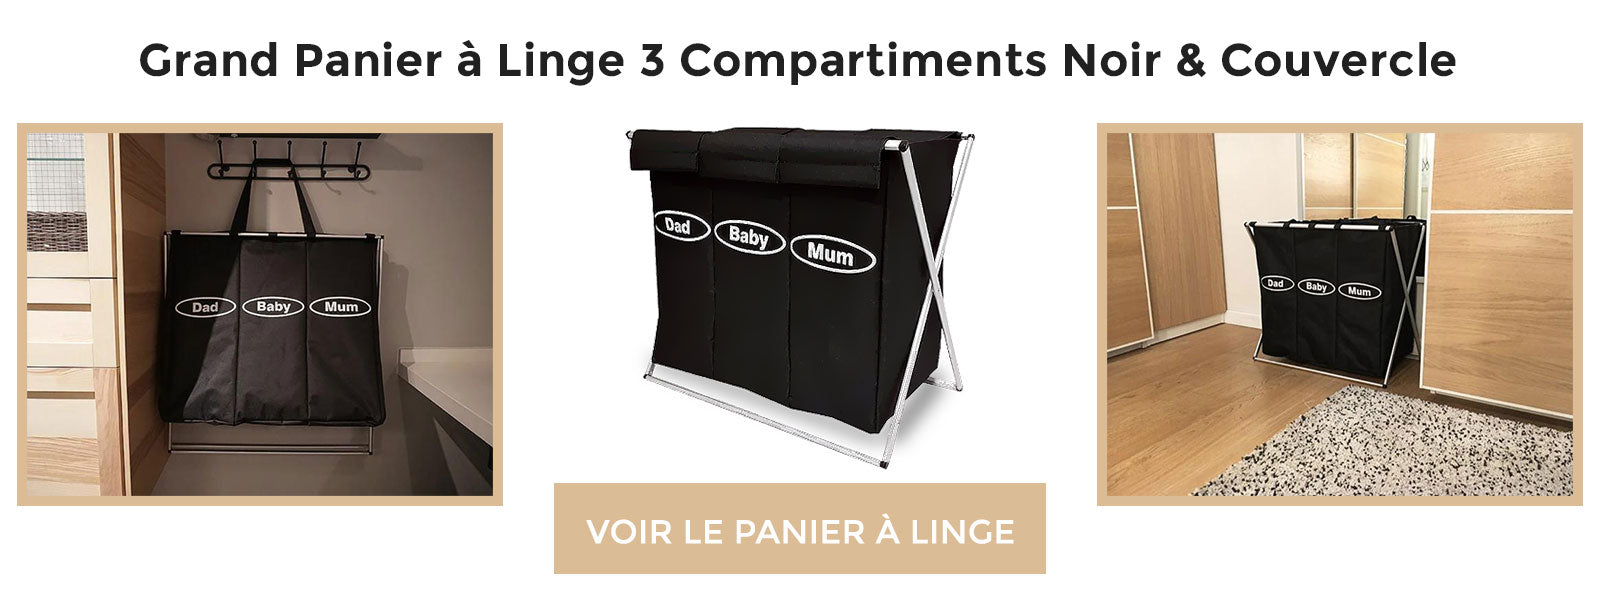 bannière Grand Panier à Linge 3 Compartiments Noir & Couvercle